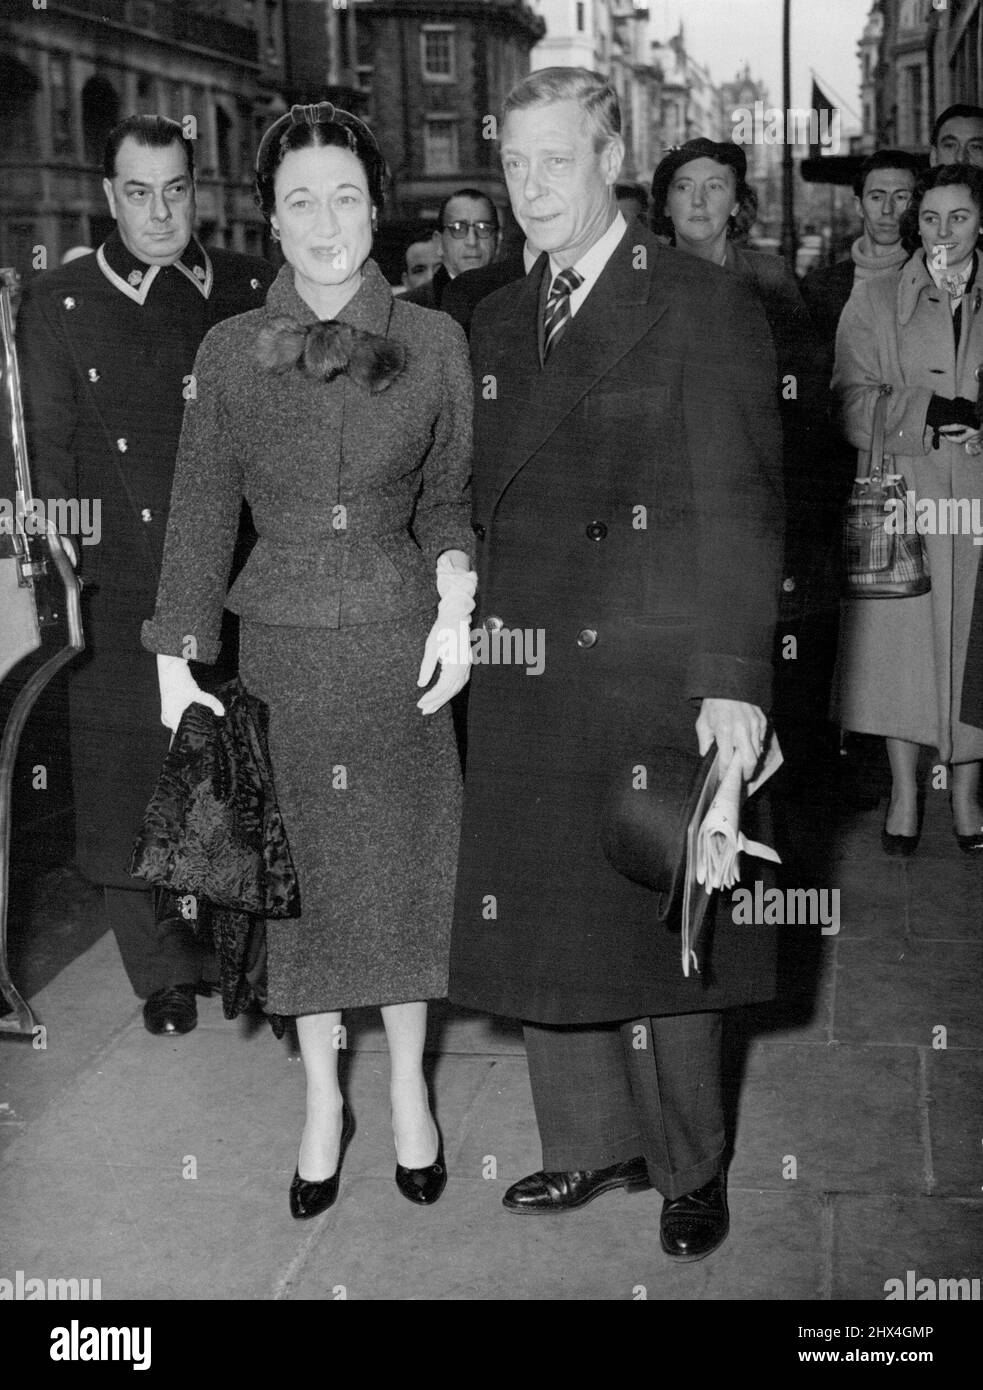 Duc et duchesse de Windsor à Londres le duc et la duchesse de Windsor photographiés comme ils se sont présentés de Claridge's Hotel, Londres, W., to-day '(lundi). Ils étaient arrivés à Londres ce matin par le ferry de nuit de Paris. Il est entendu que le duc et la duchesse sont à Londres pour une courte visite. 30 novembre 1953. (Photo de Reuterphoto) Banque D'Images